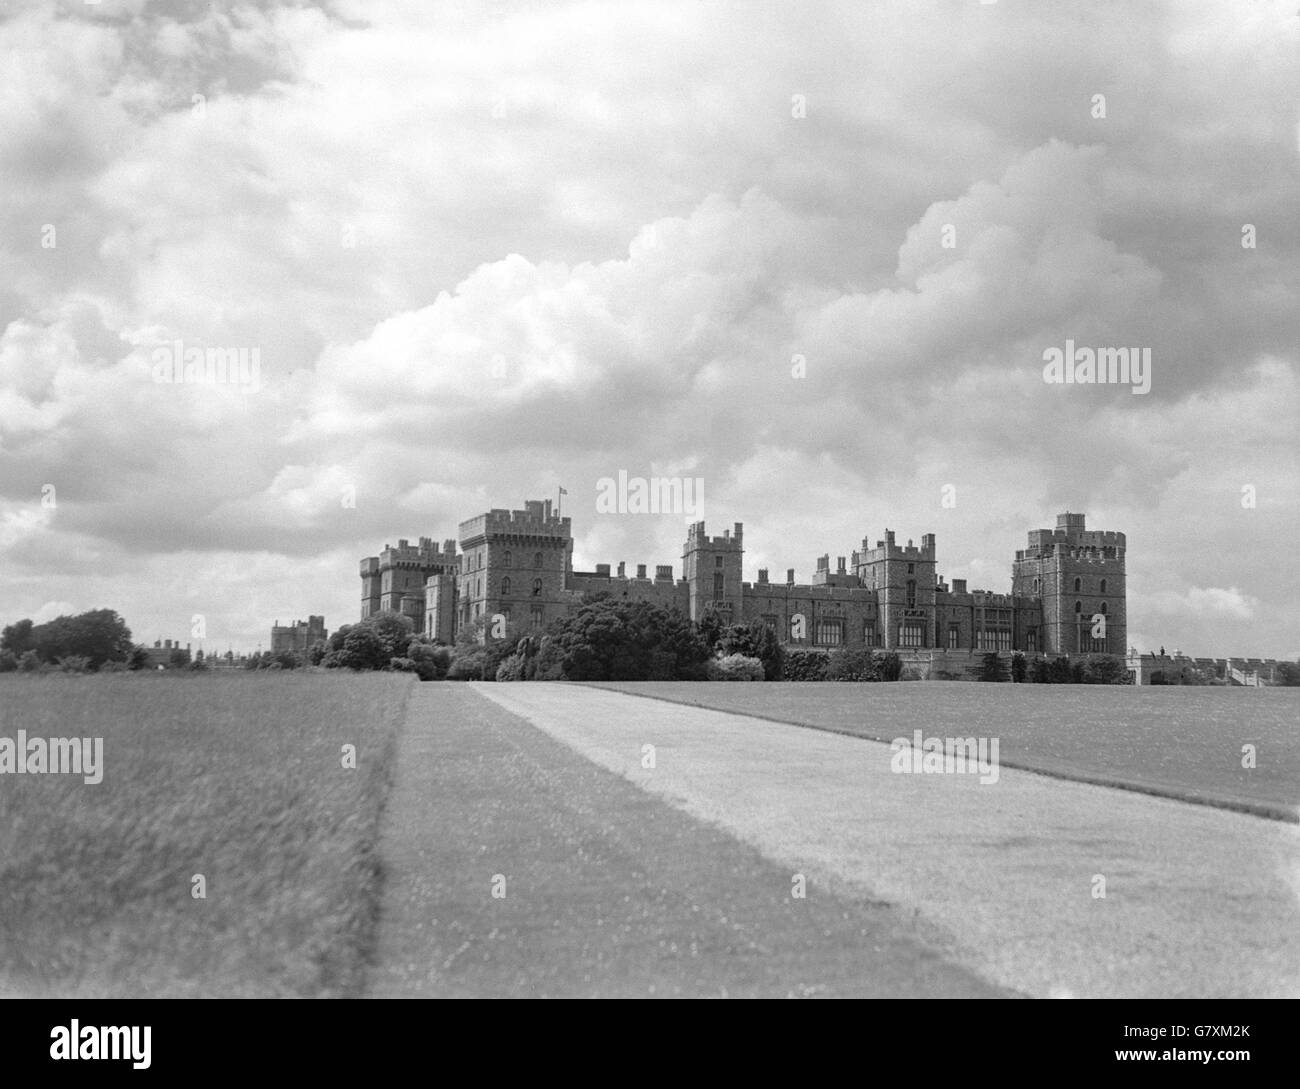 Royale - Castello di Windsor - 1939. La residenza reale del Castello di Windsor. Foto Stock